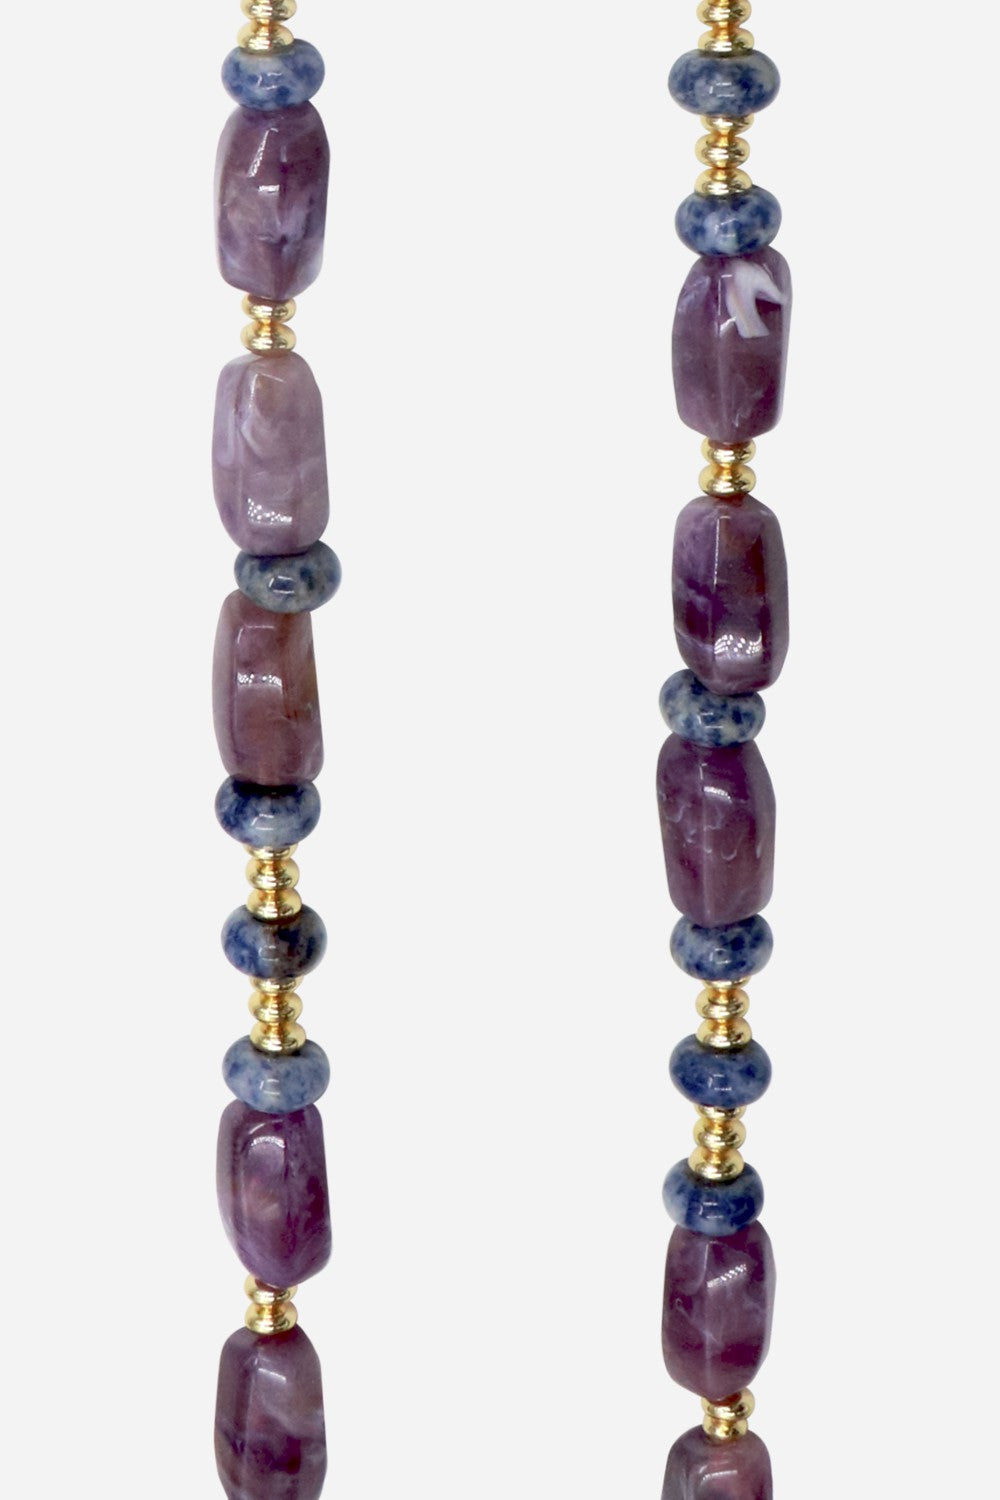 Long Eileen Purple Chain 120 cm